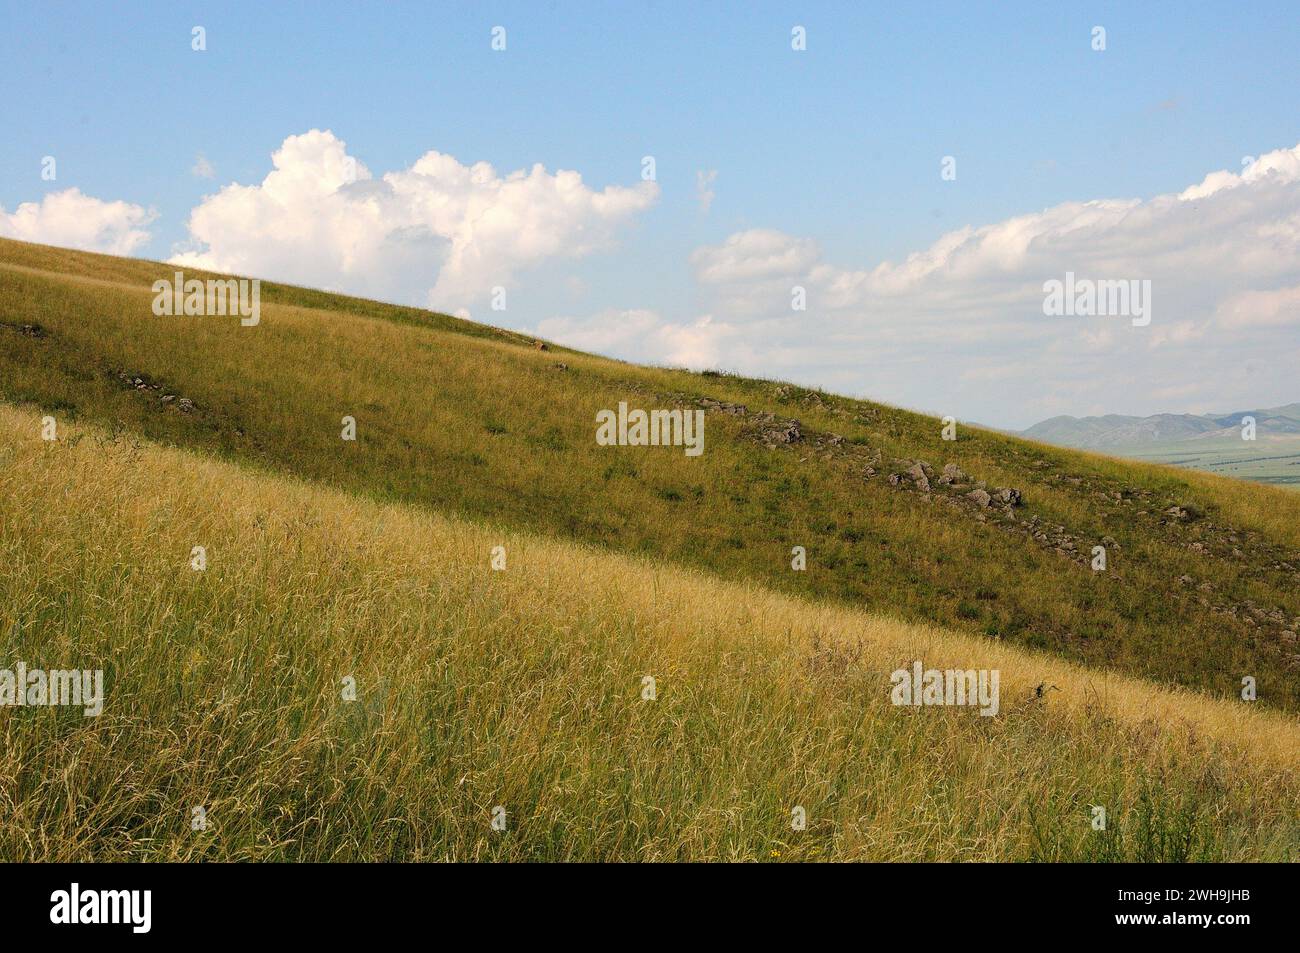 La suave pendiente de una colina alta cubierta de hierba con pequeñas formaciones de piedra bajo un cielo nublado de verano en un día claro. Khakassia, Siberia, Rusia. Foto de stock